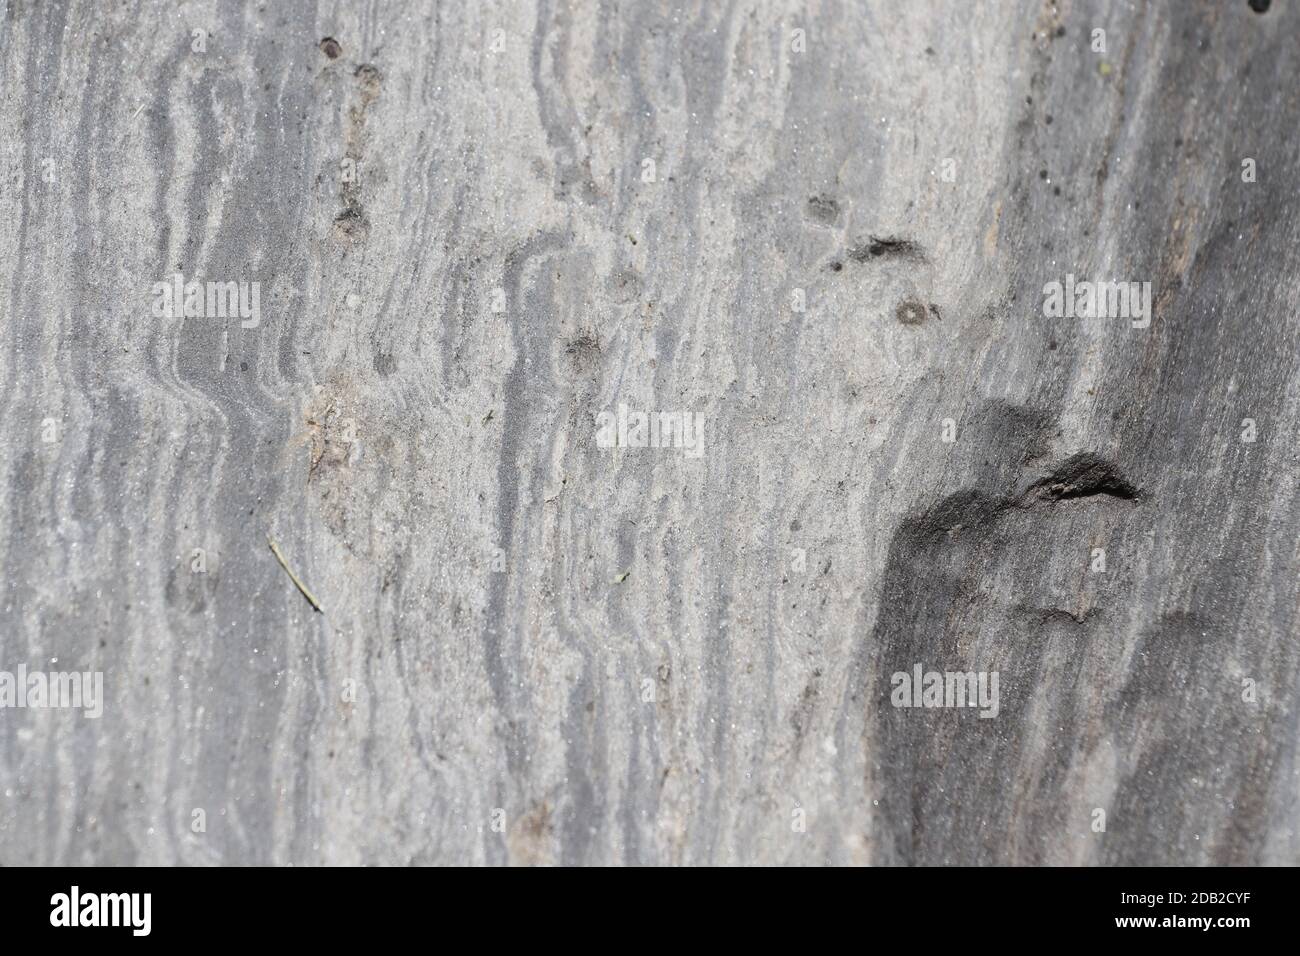 Quatz vene nella roccia visto da vicino. Foto Stock